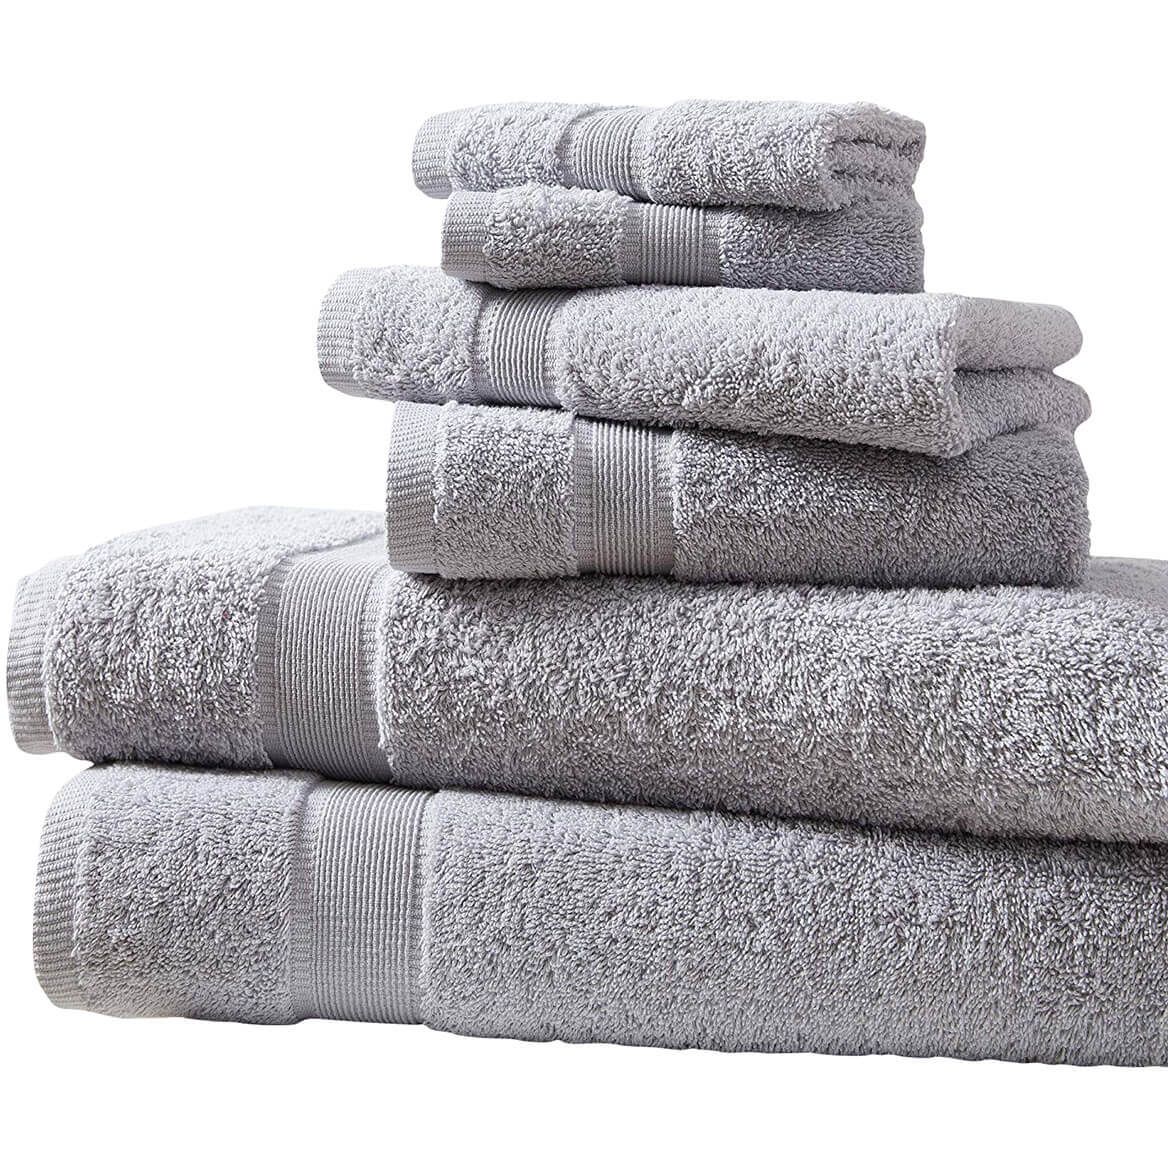 Cotton 6 Piece Bath Towel Set + '-' + 373586